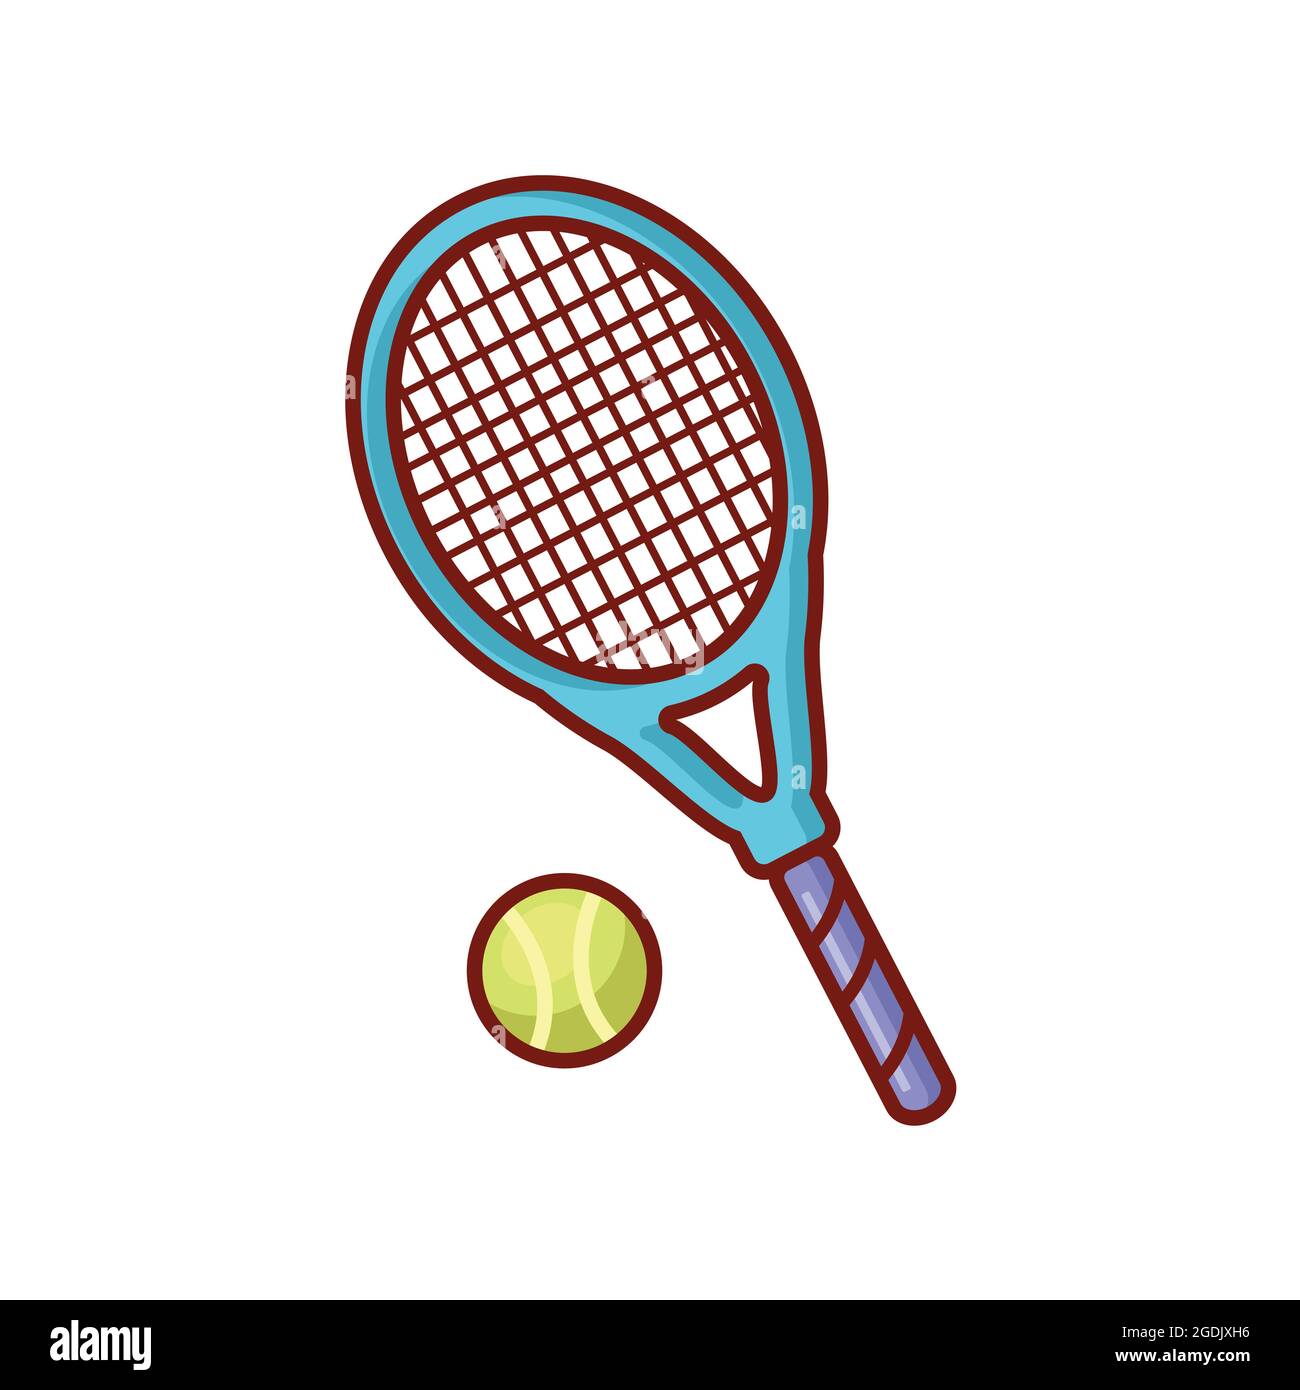 tennis de raquette et dessin de balle de tennis style simple, vecteur de  tennis, conception isolée de tennis sur fond blanc Image Vectorielle Stock  - Alamy